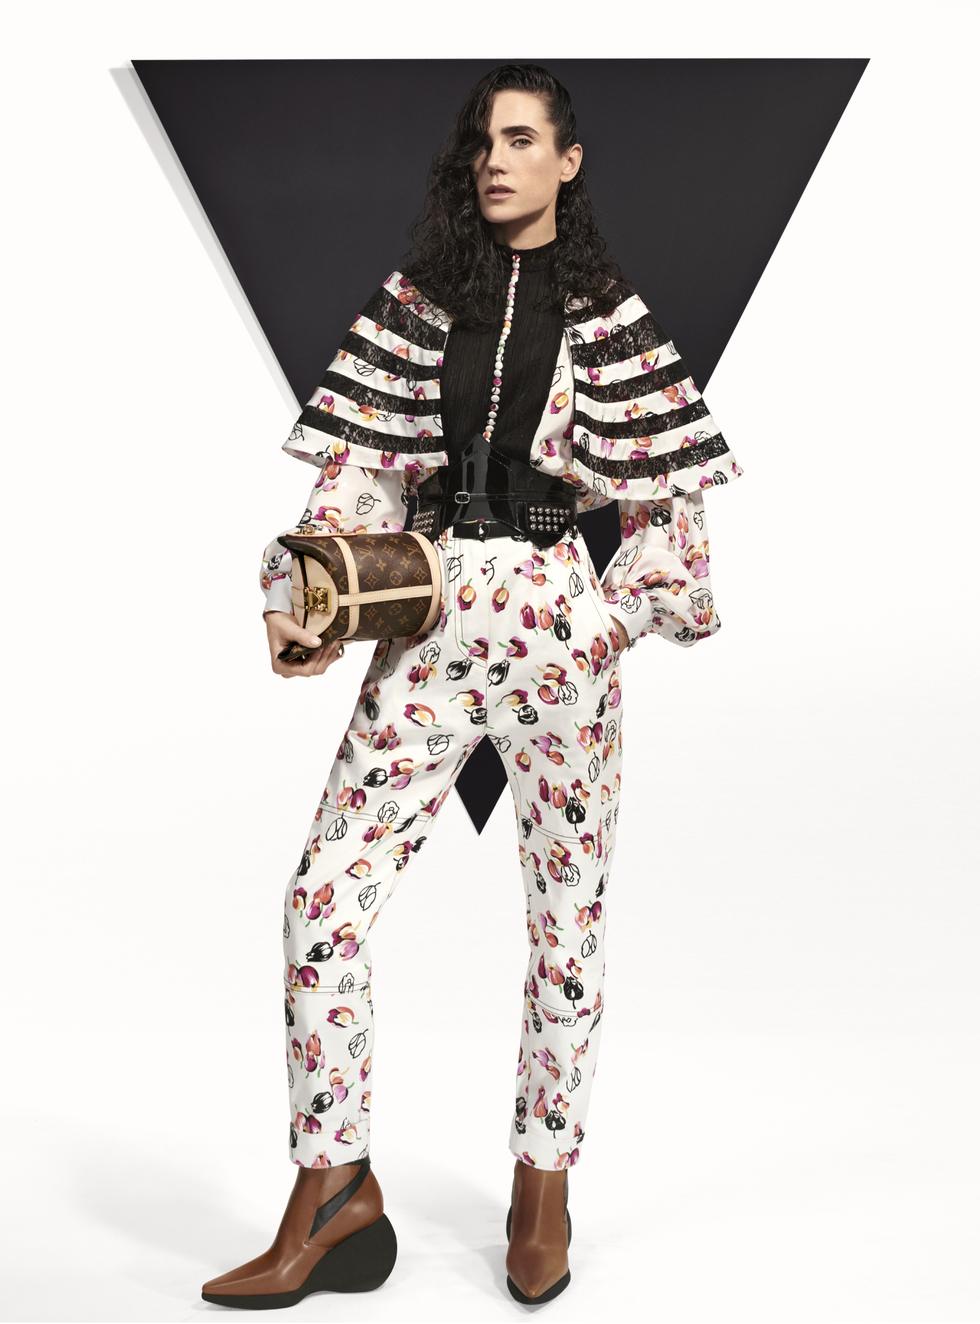 Louis Vuitton - Alicia Vikander embodies the Louis Vuitton woman